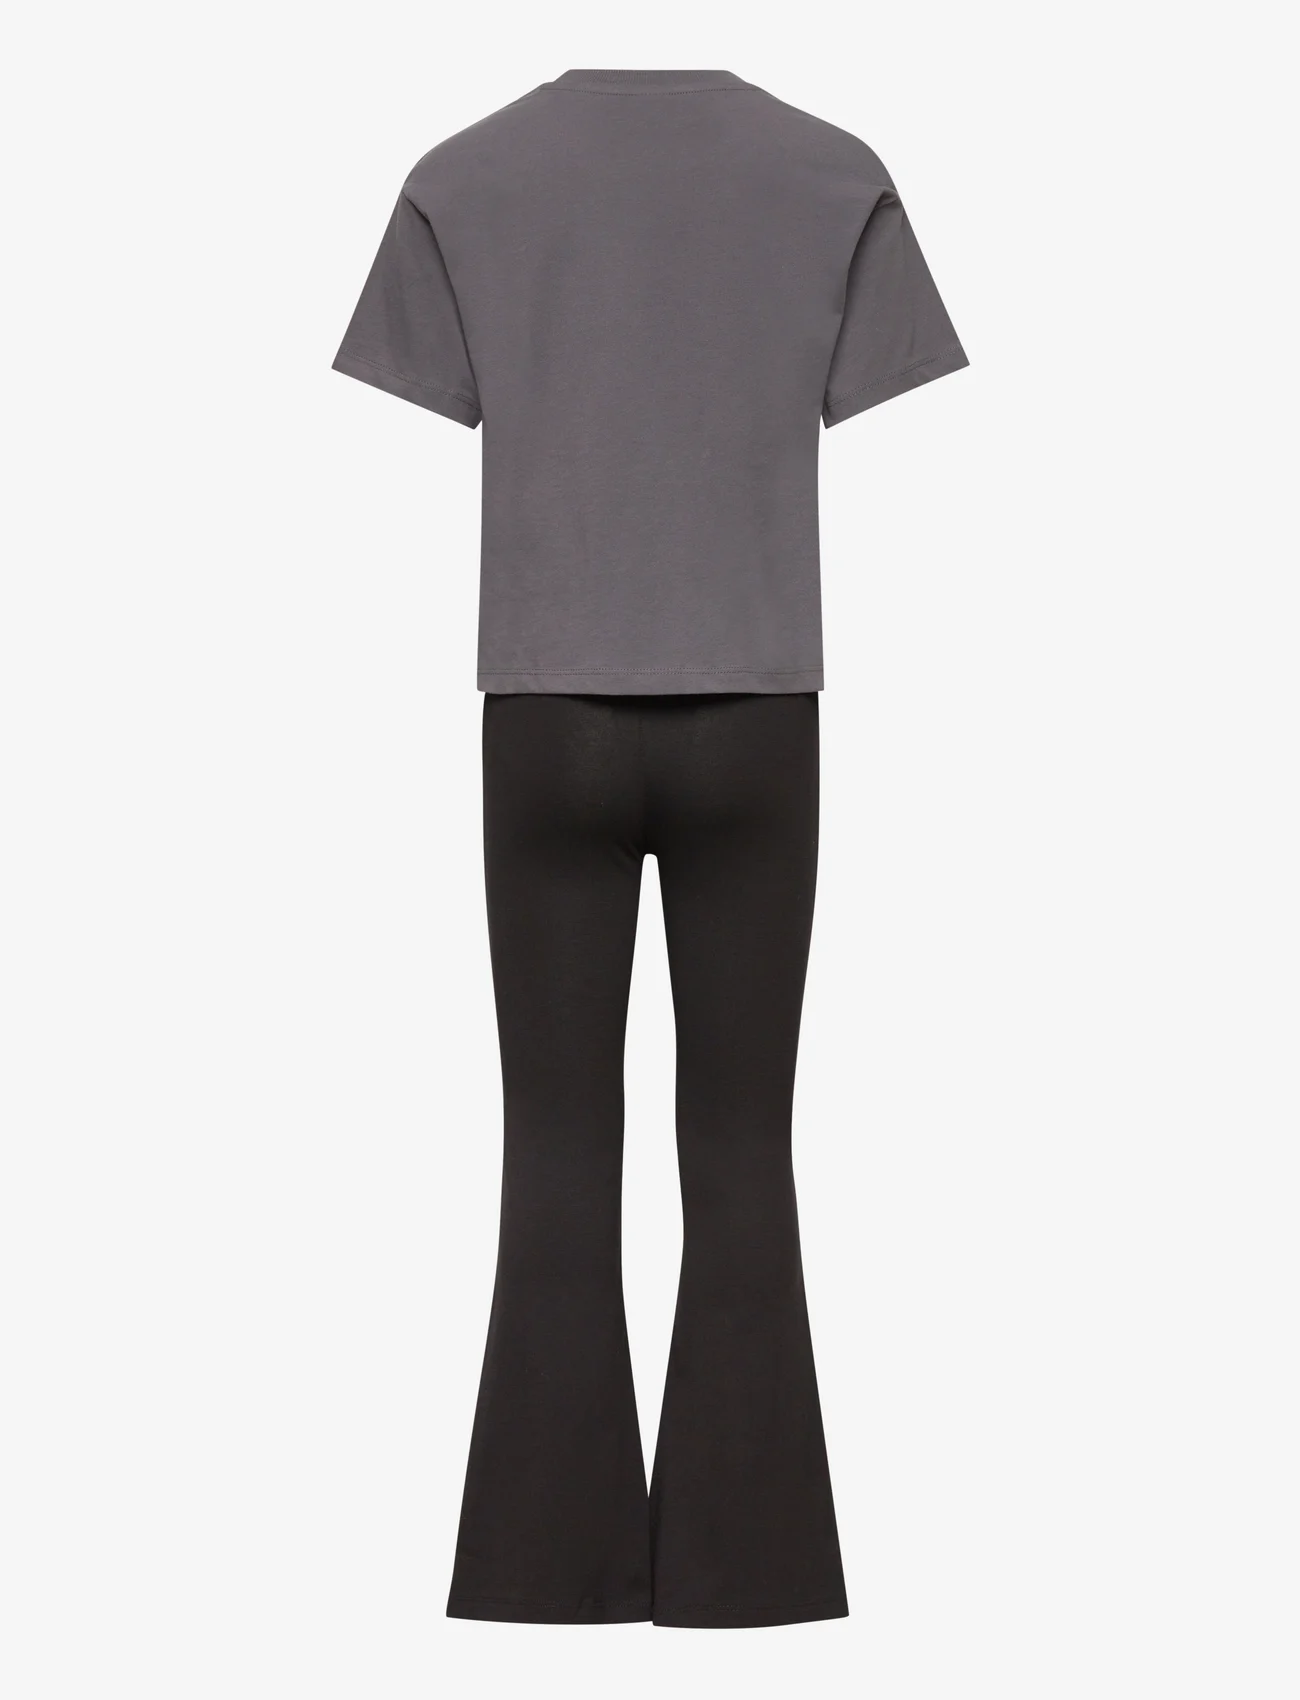 Lindex - T shirt Rio and flare set - sets - dark grey - 1